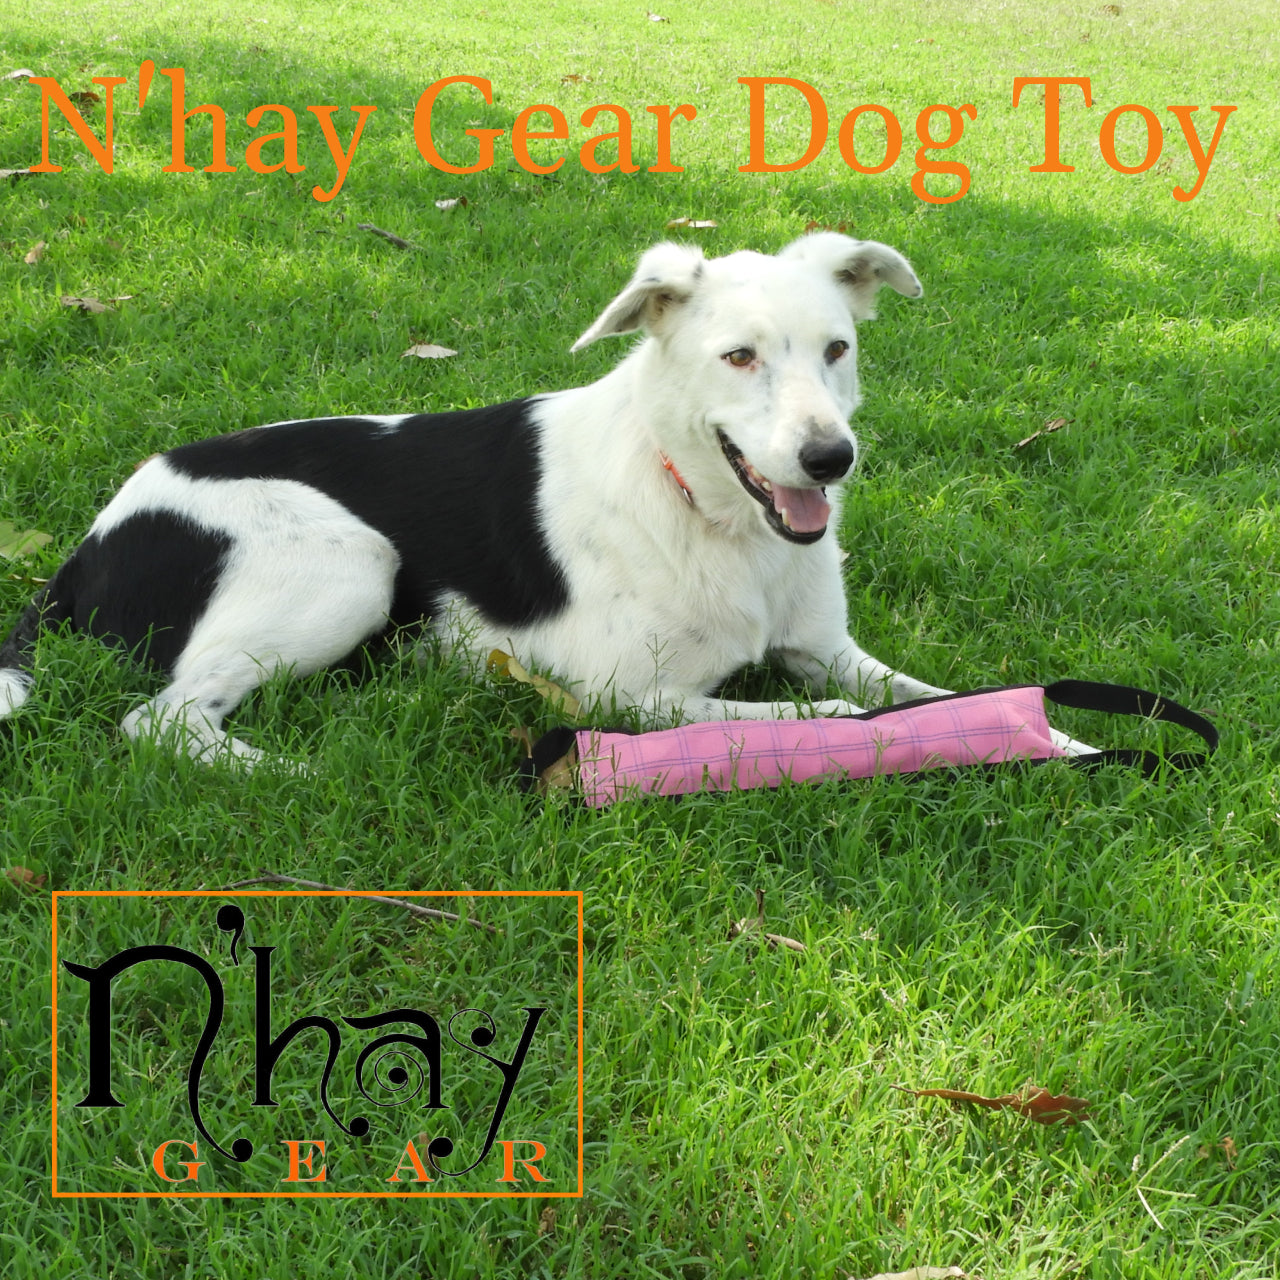 N Hay Gear Dog Toy Outdoor Waterproof